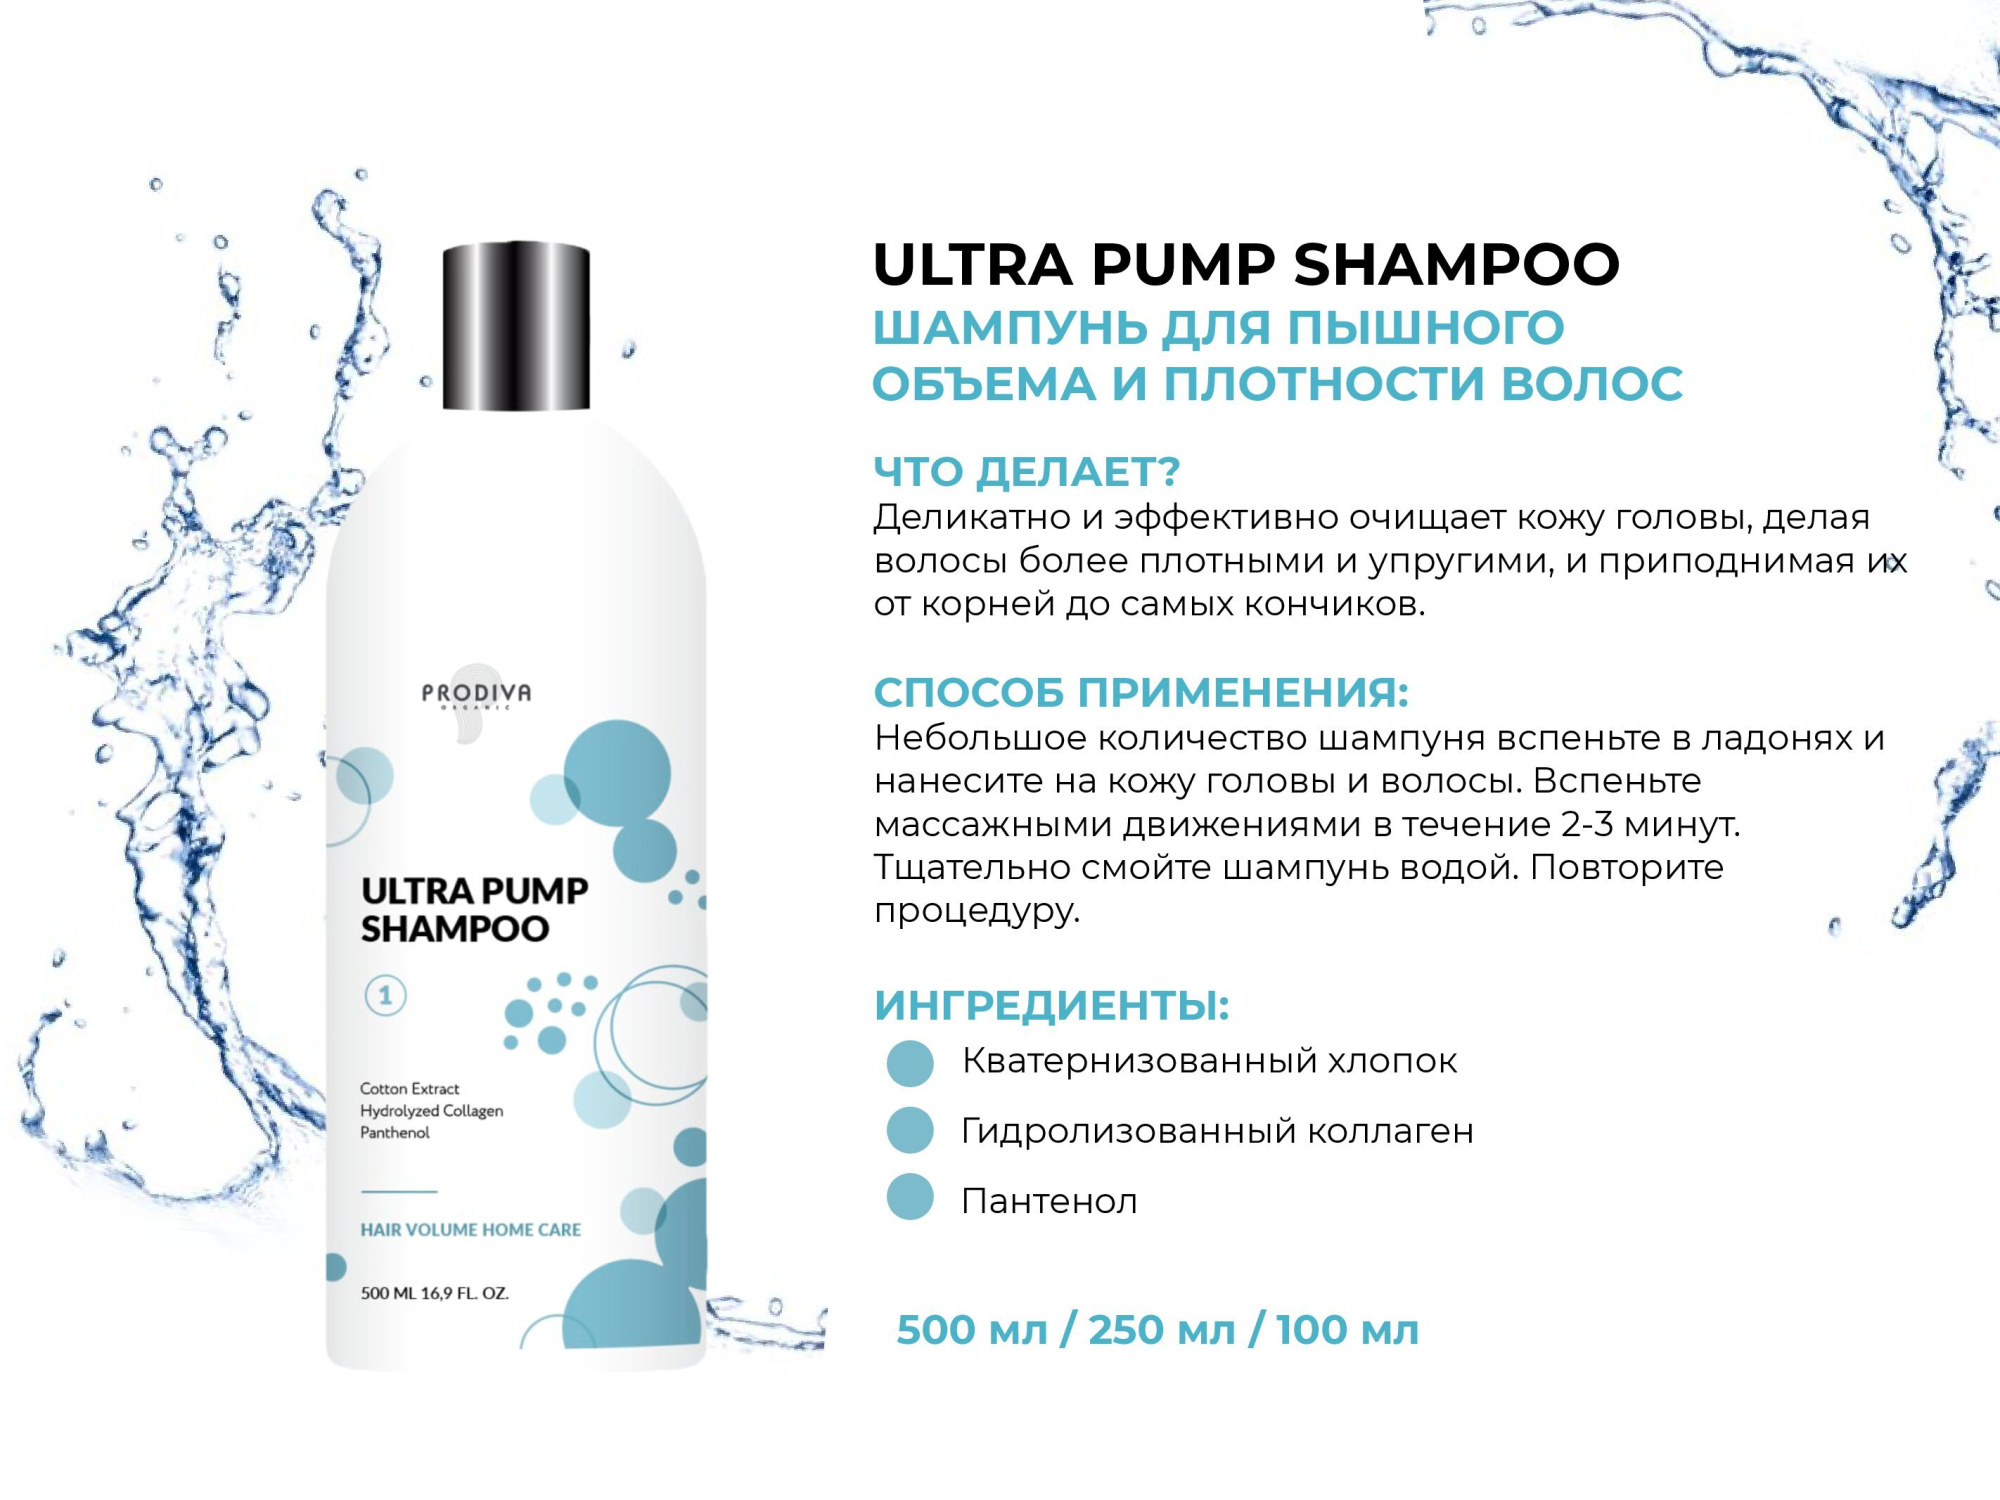 Шампунь для пышного объема и плотности волос PRODIVA Ultra Pump Shampoo, 250 мл